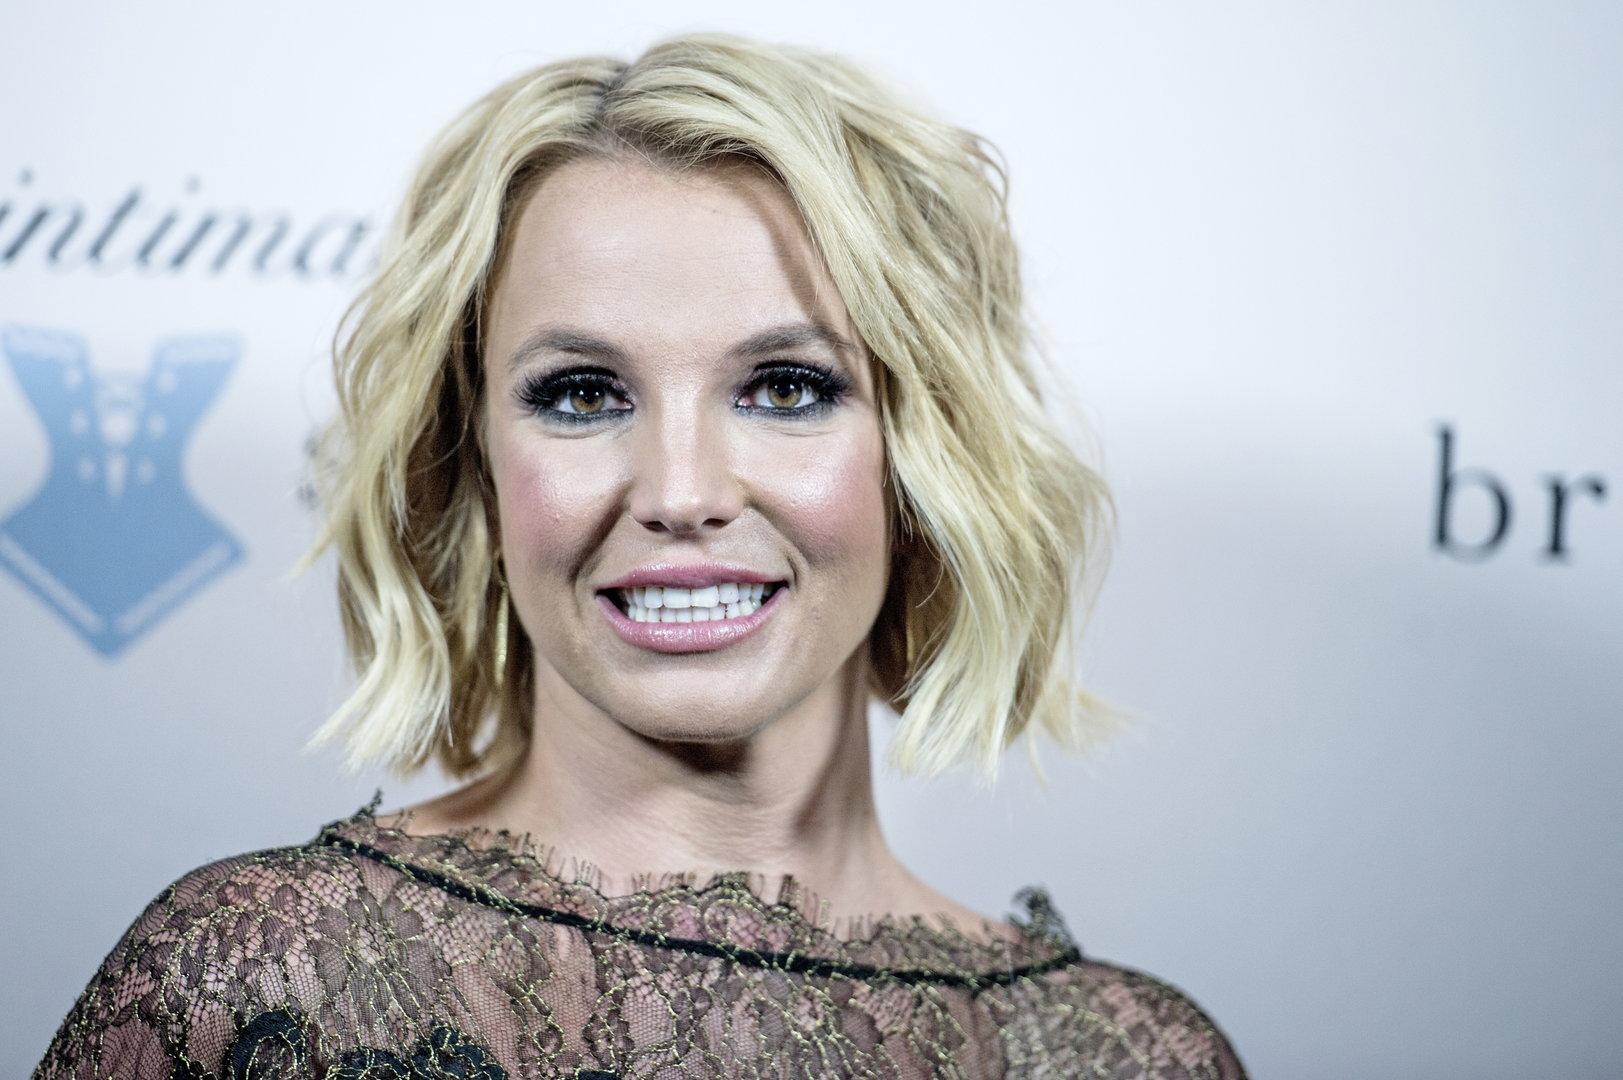 Britney Spears: Anwaltskosten für Vormundschaft in Millionen-Höhe